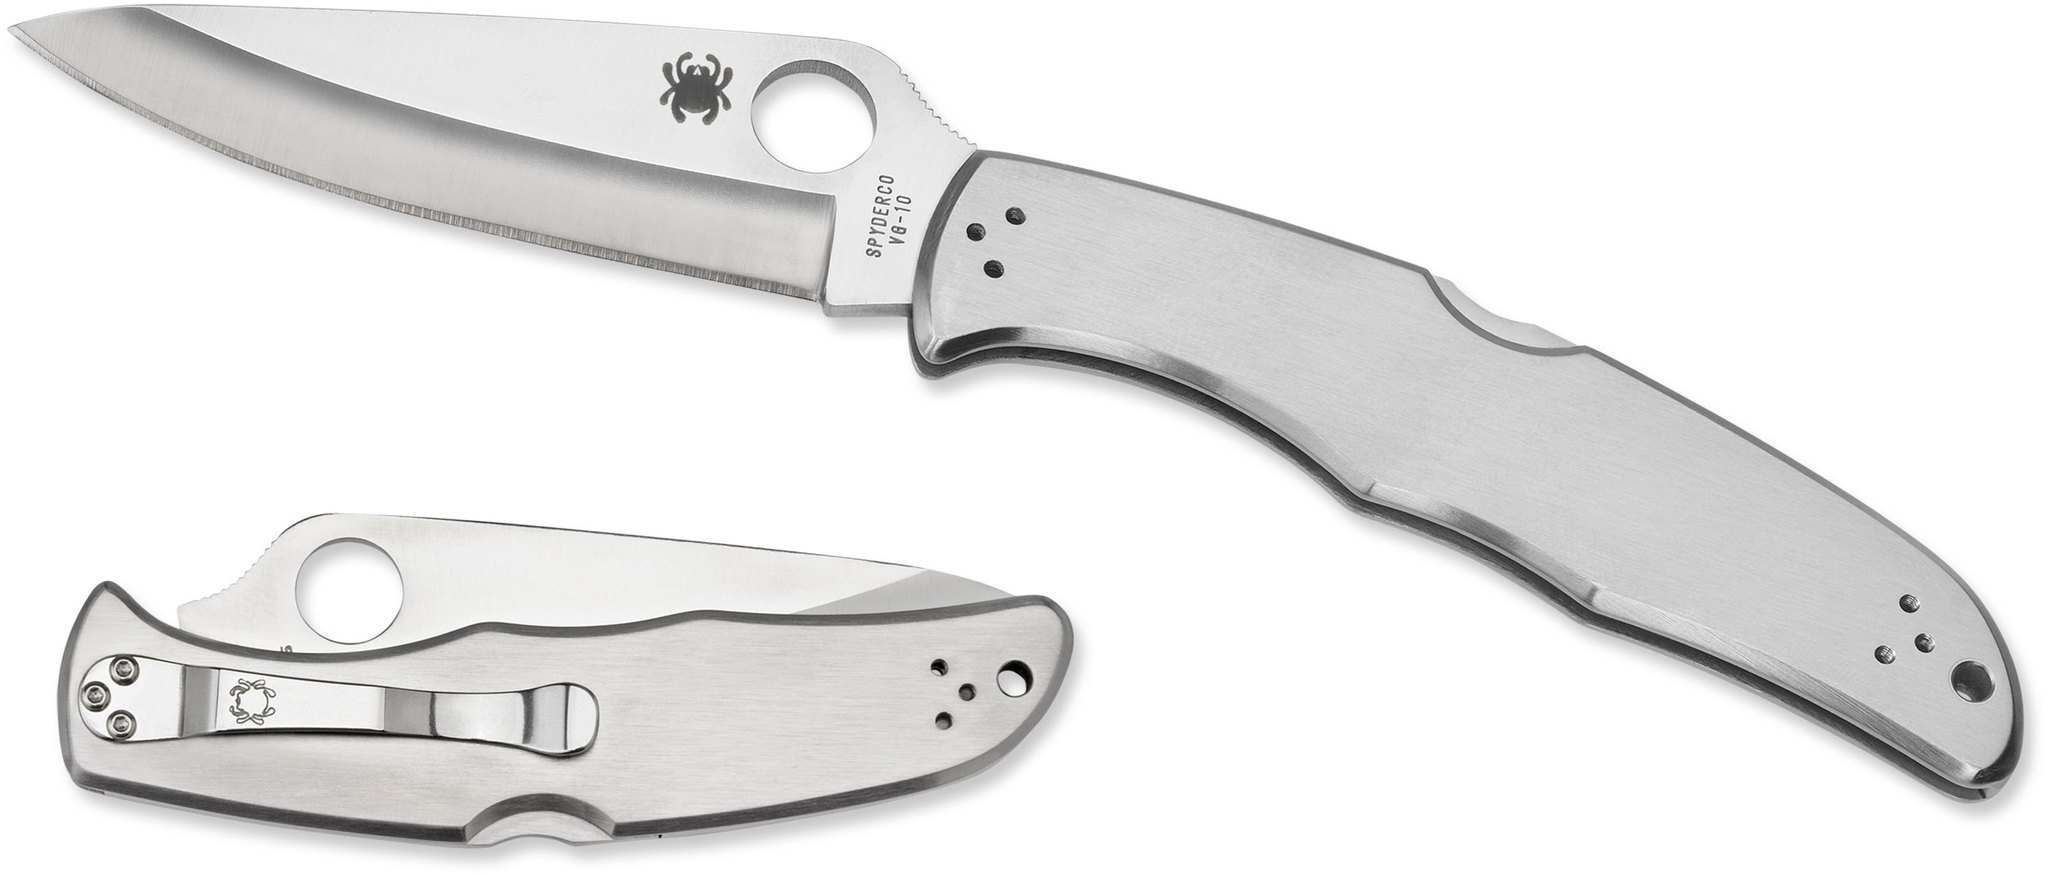 Складной нож Endura 4 - Spyderco 10P, сталь VG-10 Satin Plain, рукоять нержавеющая сталь - фото 4